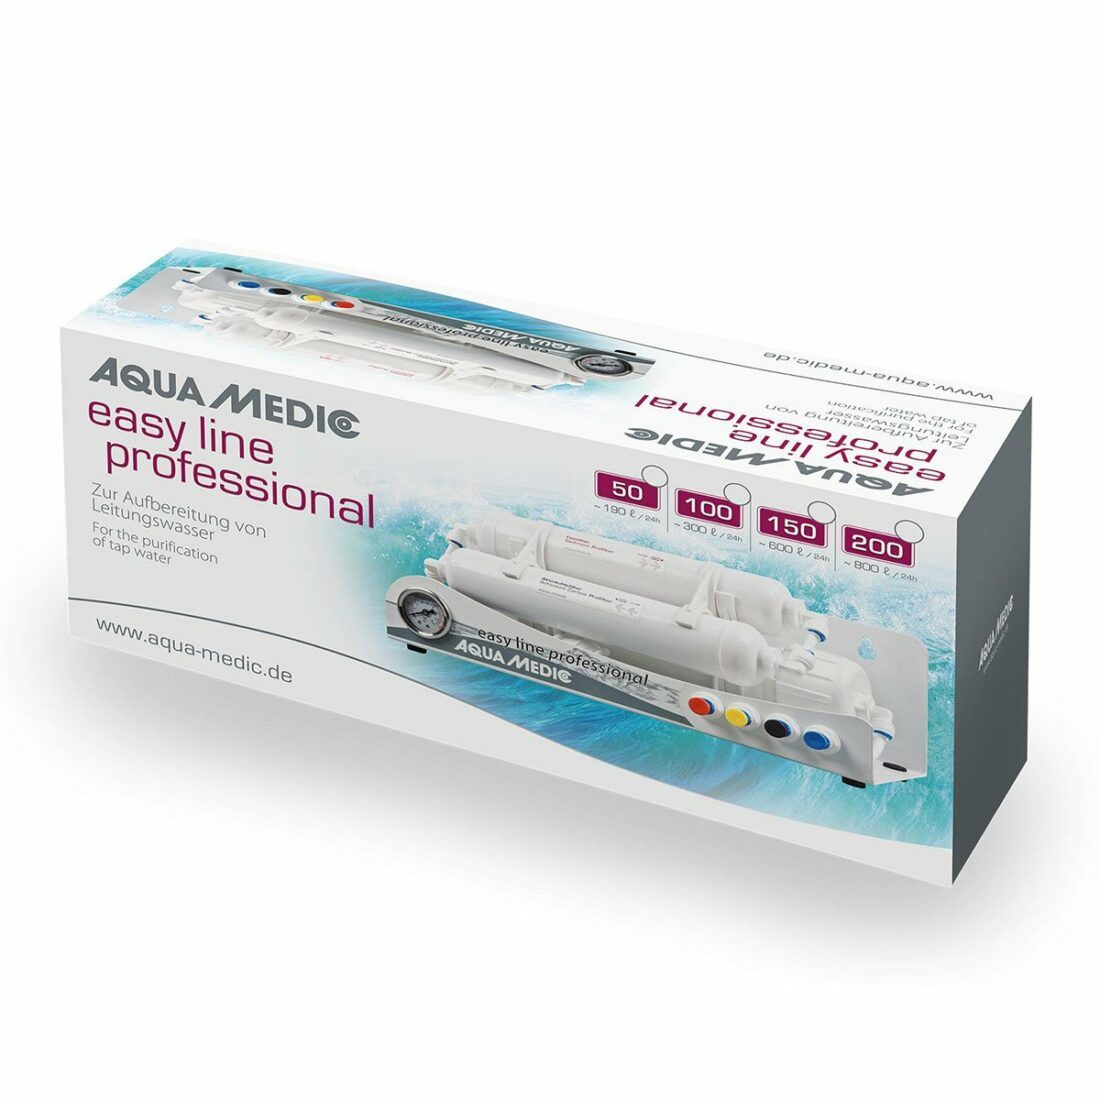 Aqua Medic reverzní osmóza easy